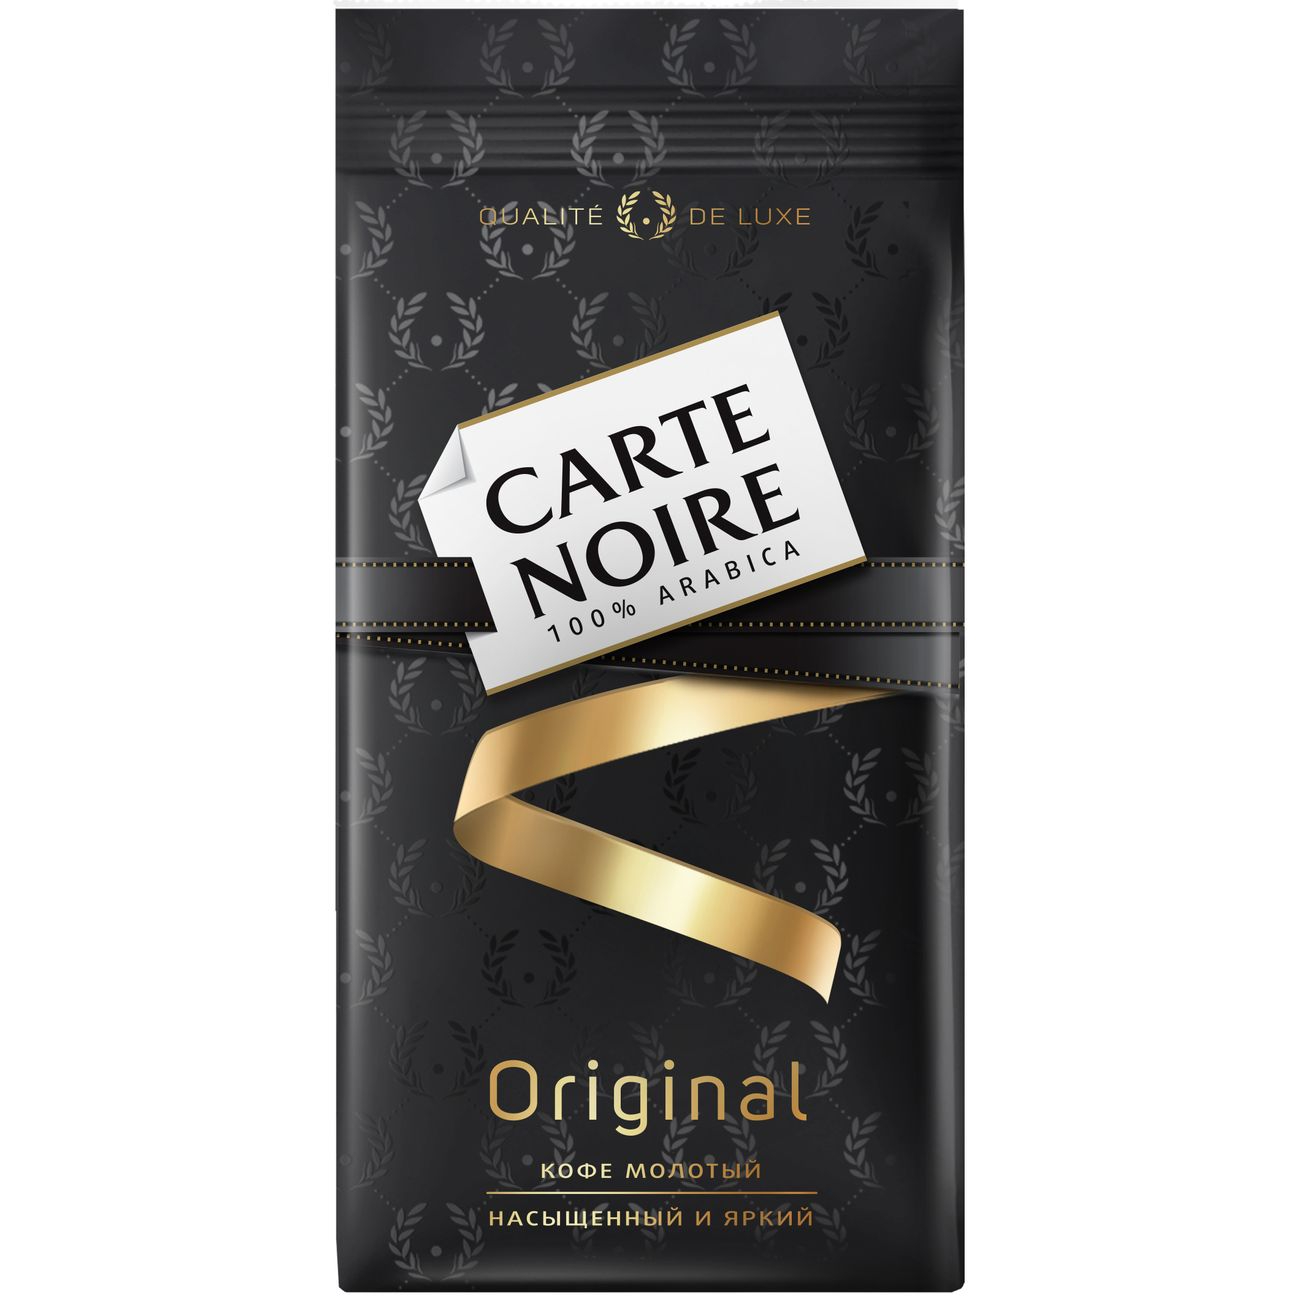 Carte Noire Original кофе молотый, 230 г